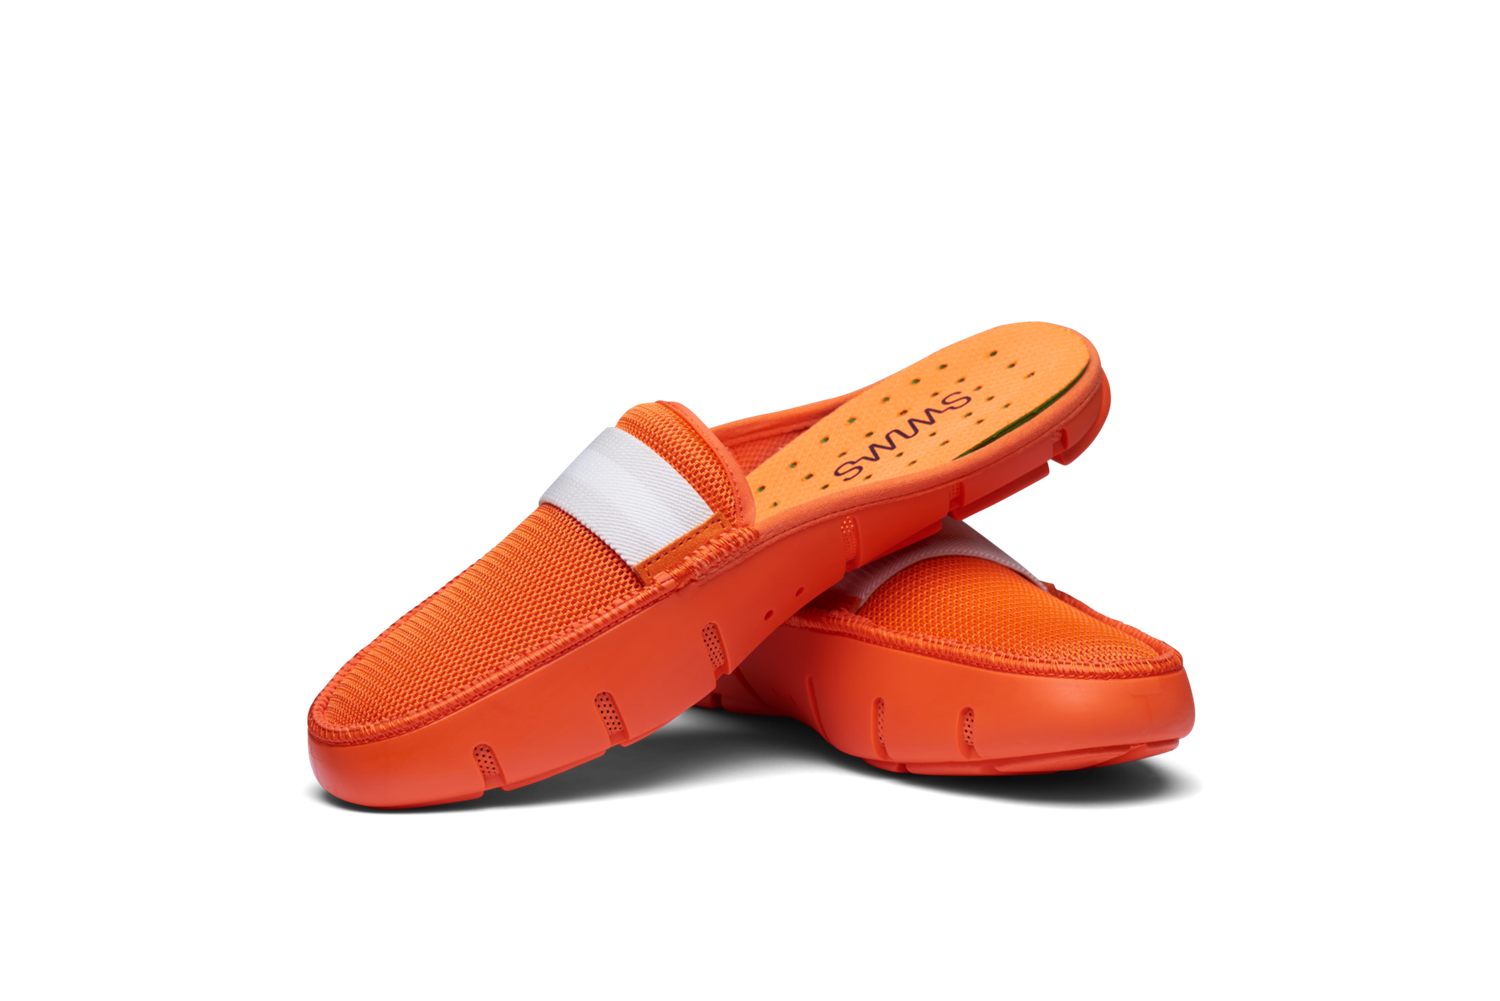 Slide Loafer Swims Orange